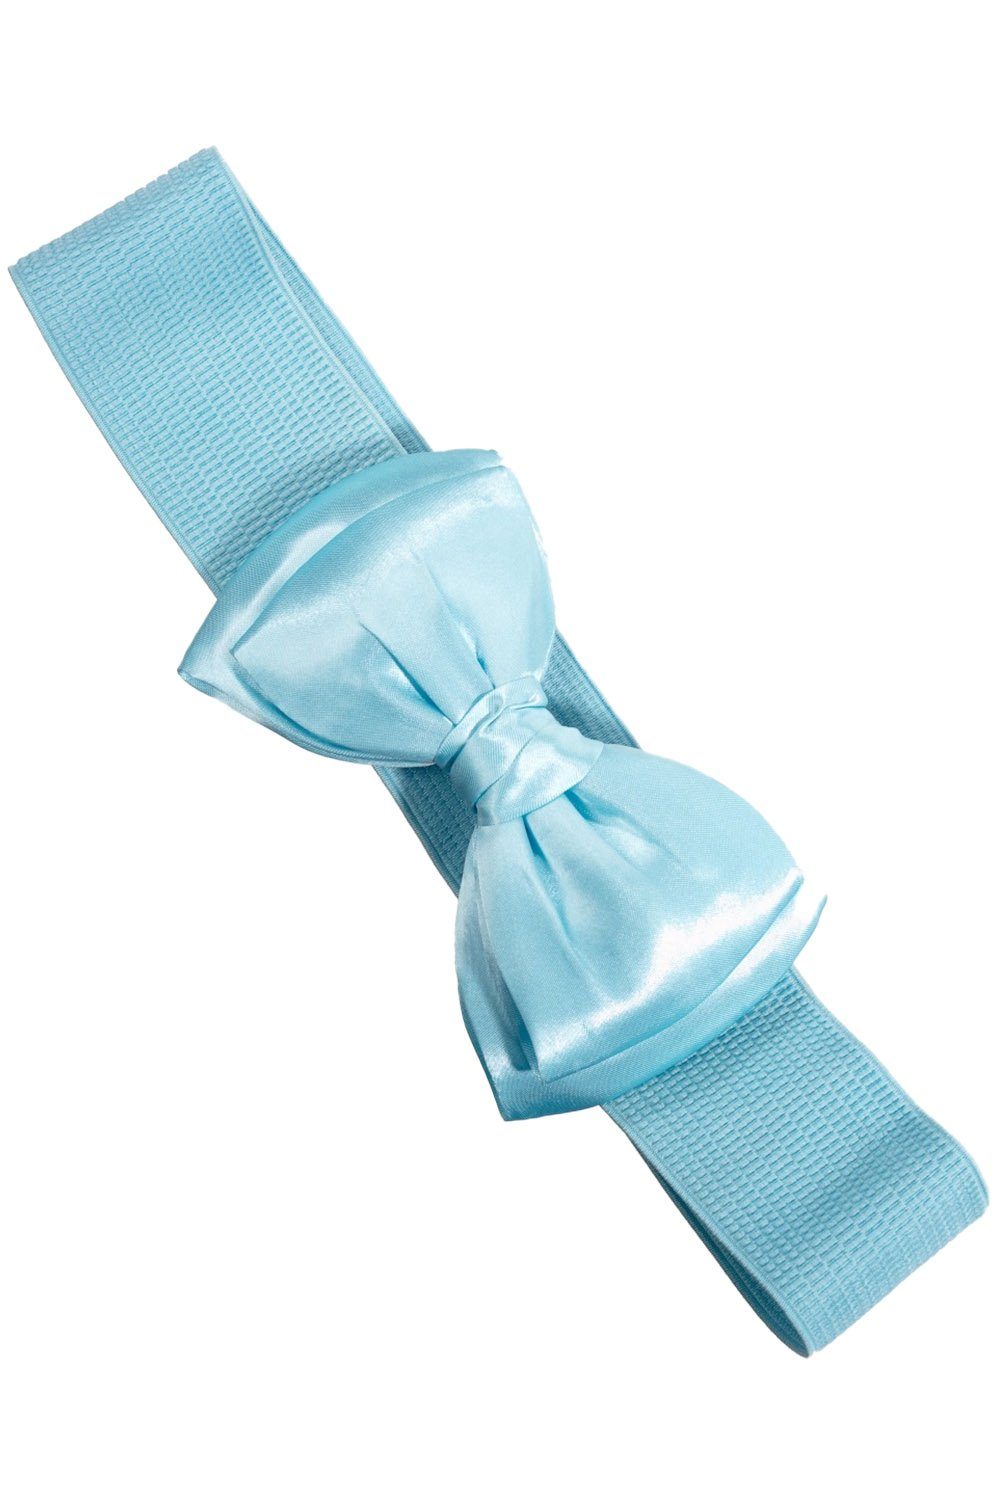 Banned Taillengürtel Bella Belt Baby Blau Vintage Schleife Retro Stretchgürtel | Taillengürtel